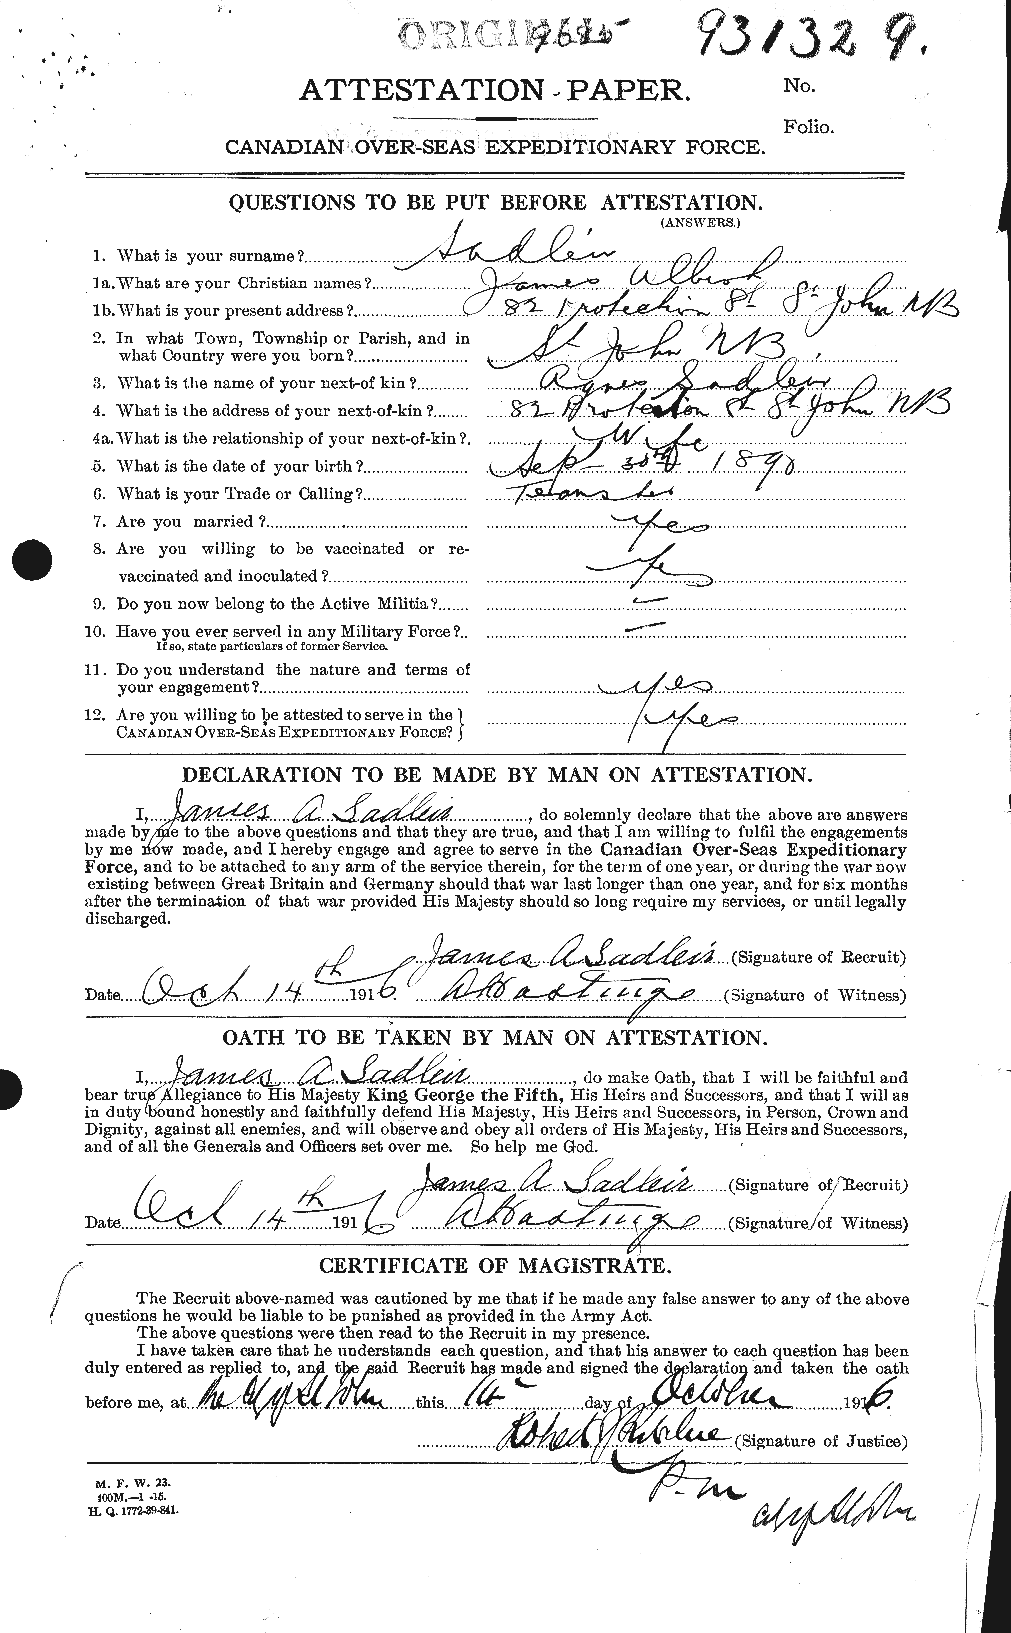 Dossiers du Personnel de la Première Guerre mondiale - CEC 077772a